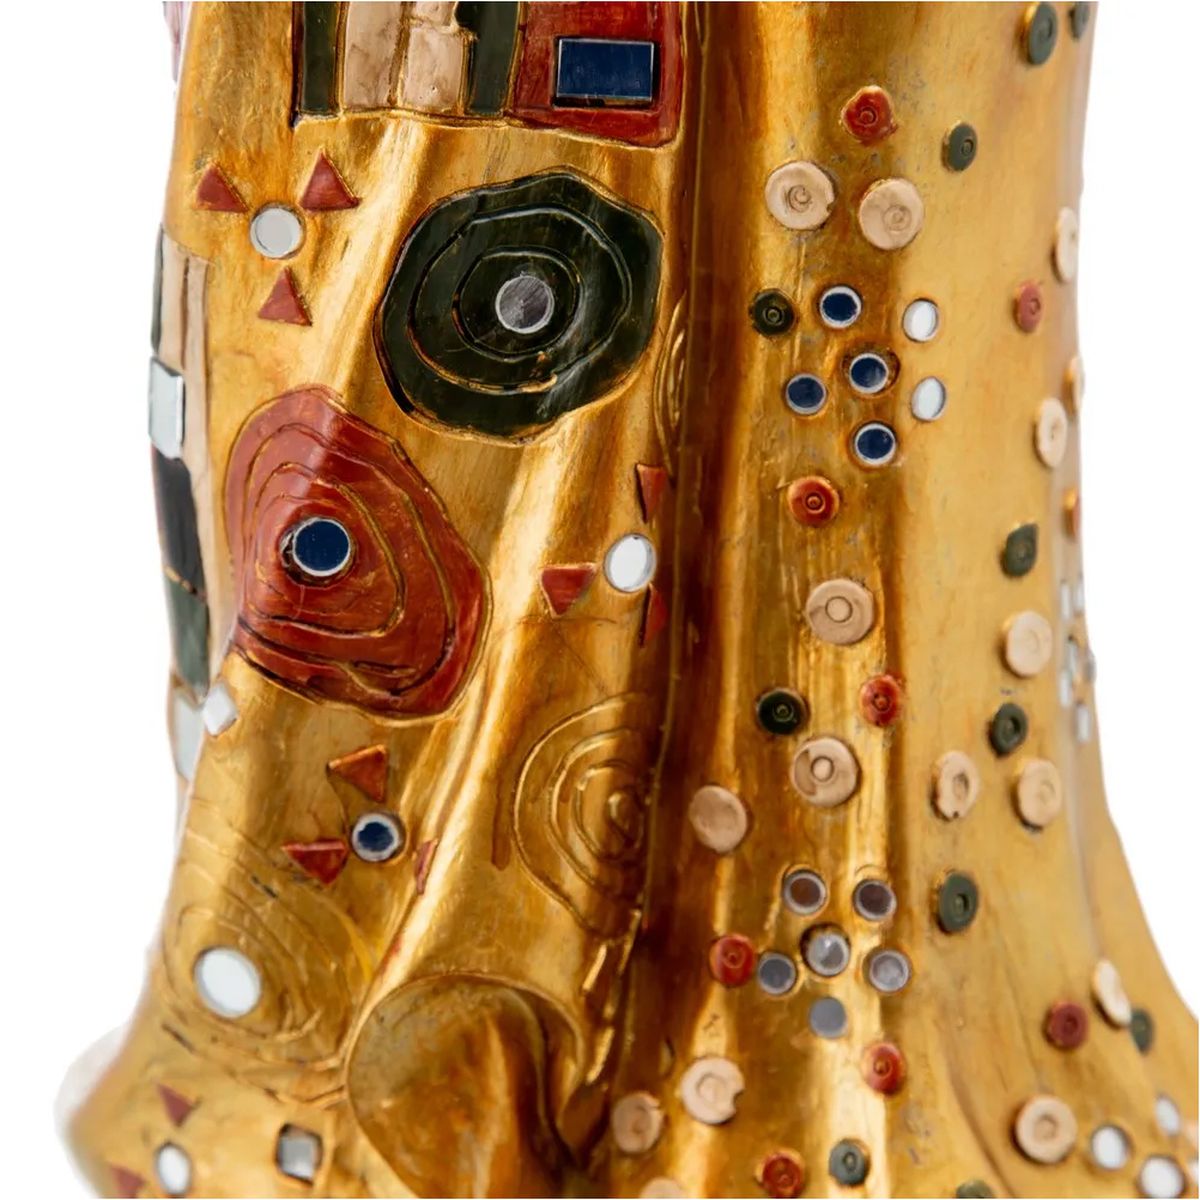 Statuette inspire de Klimt 34 cm